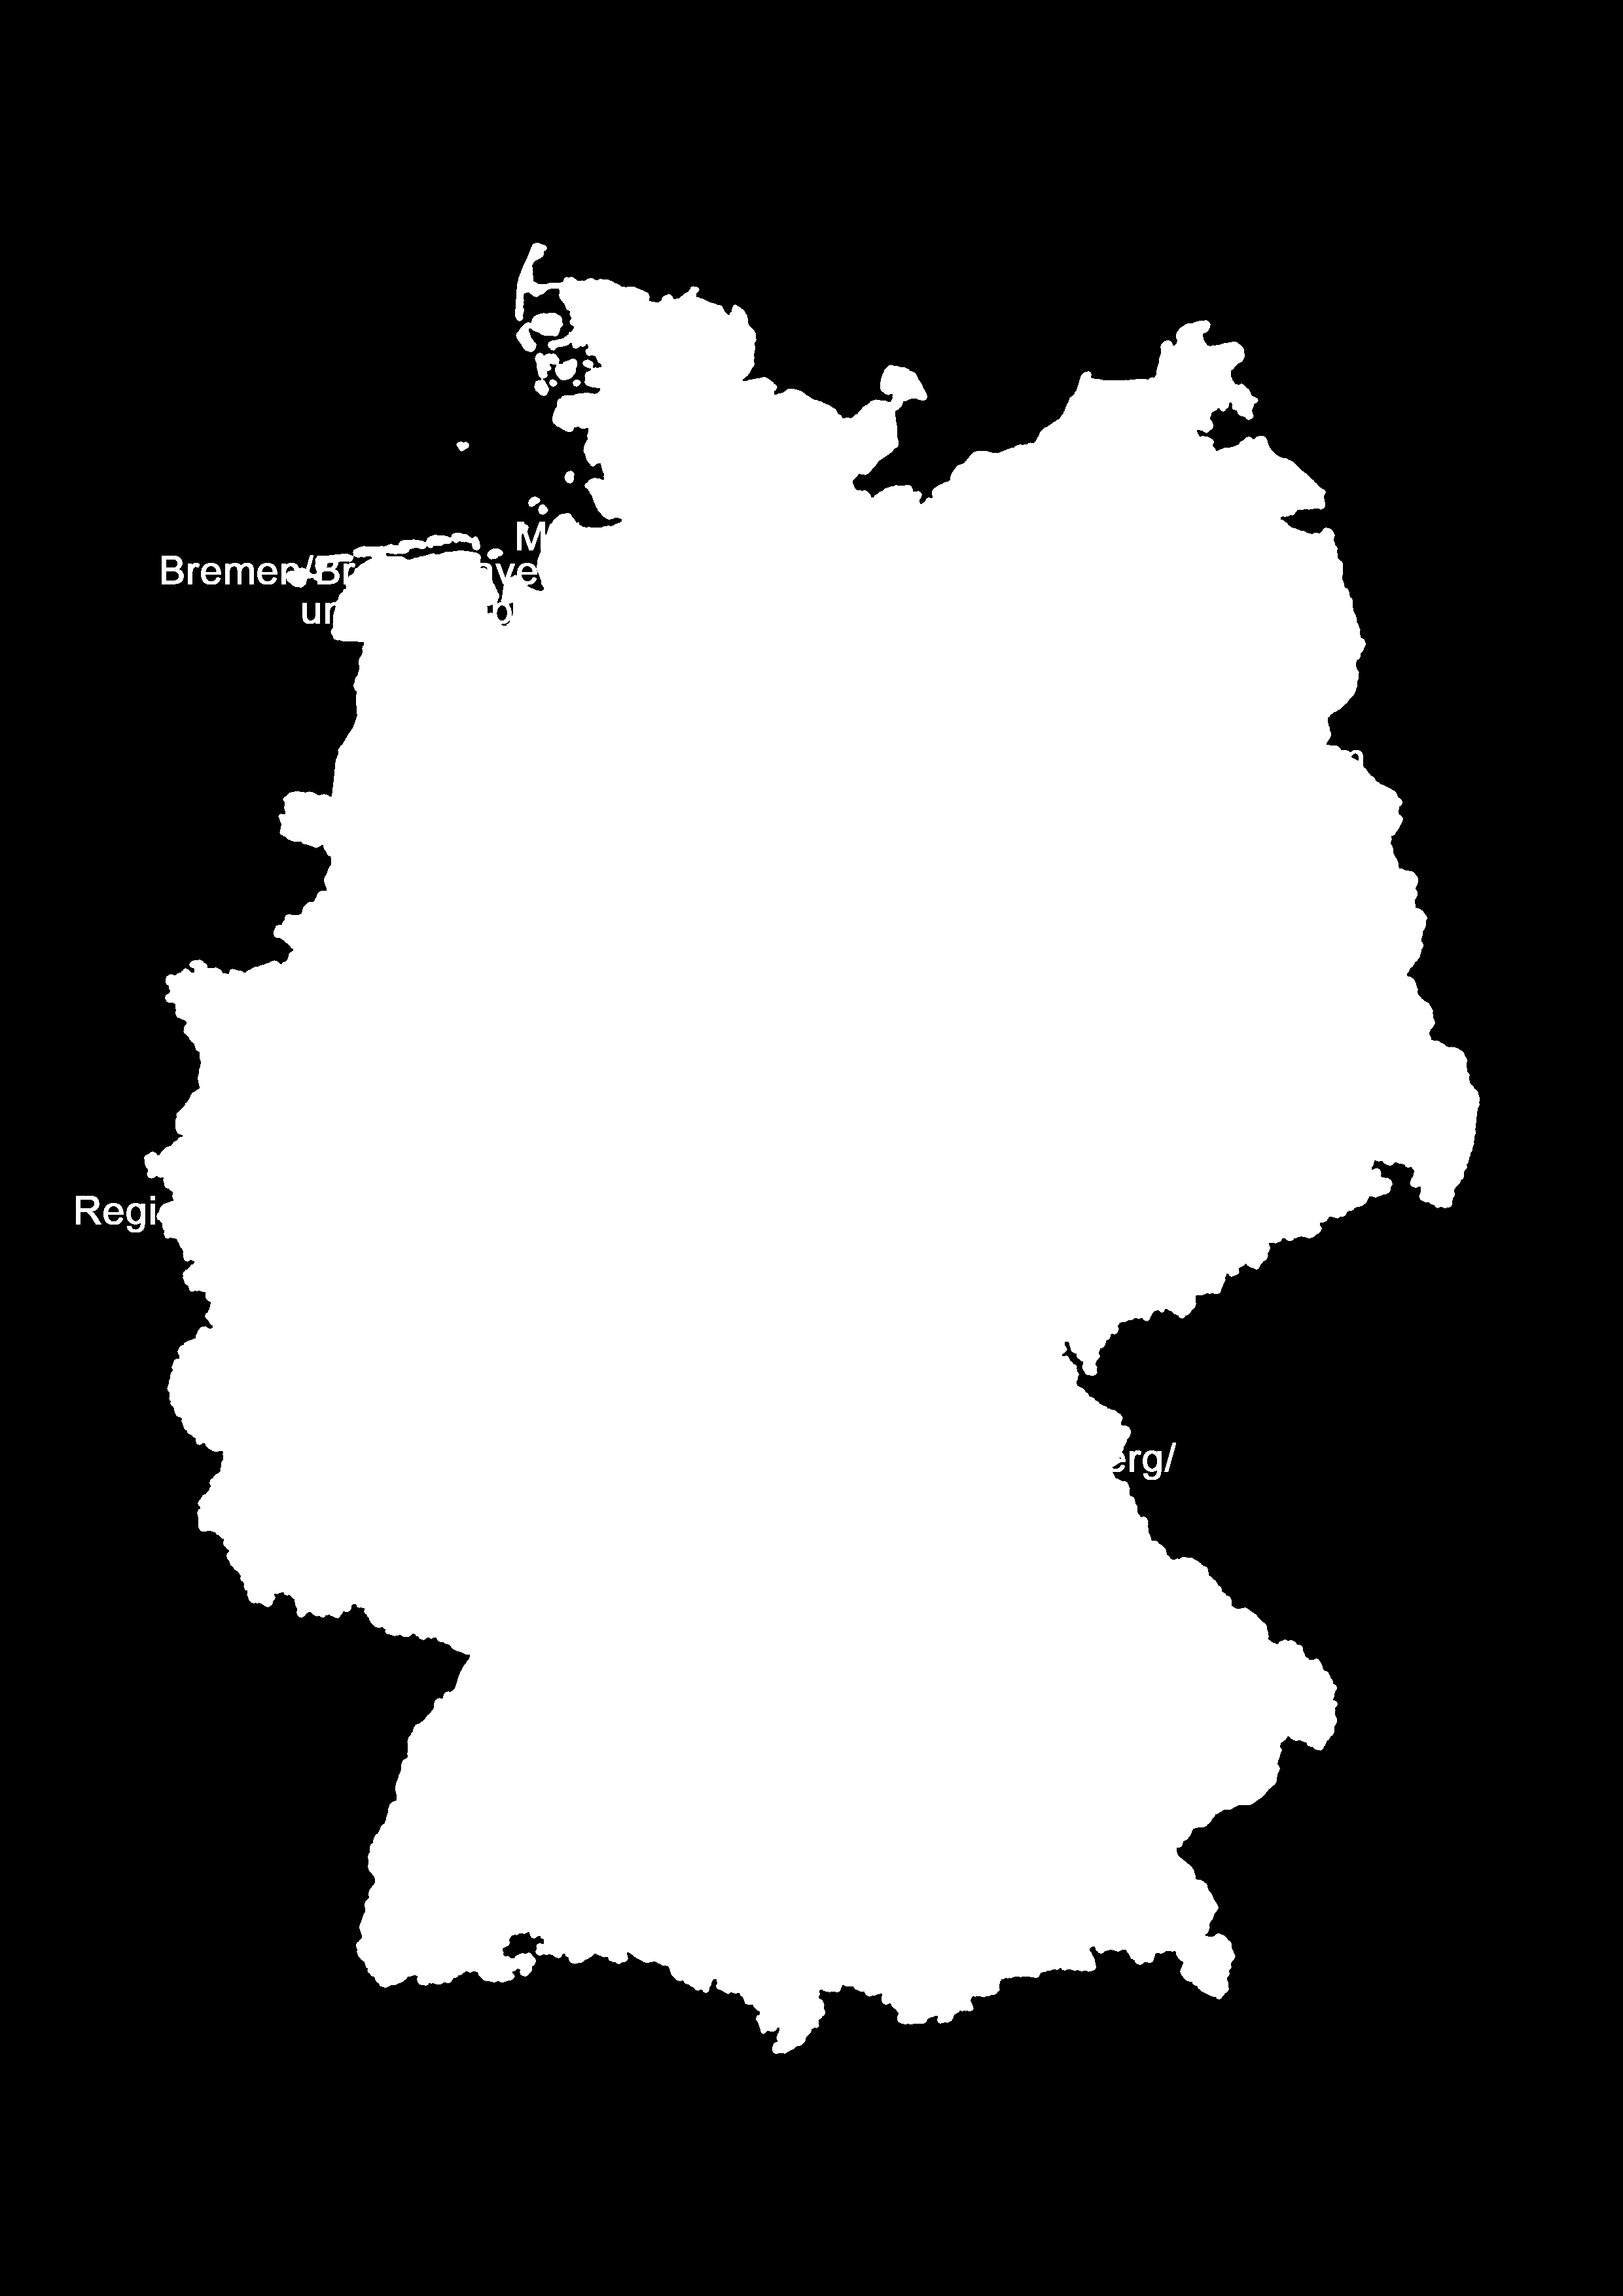 Großraum Berlin bleibt bei den Metropolregionen die Nr.